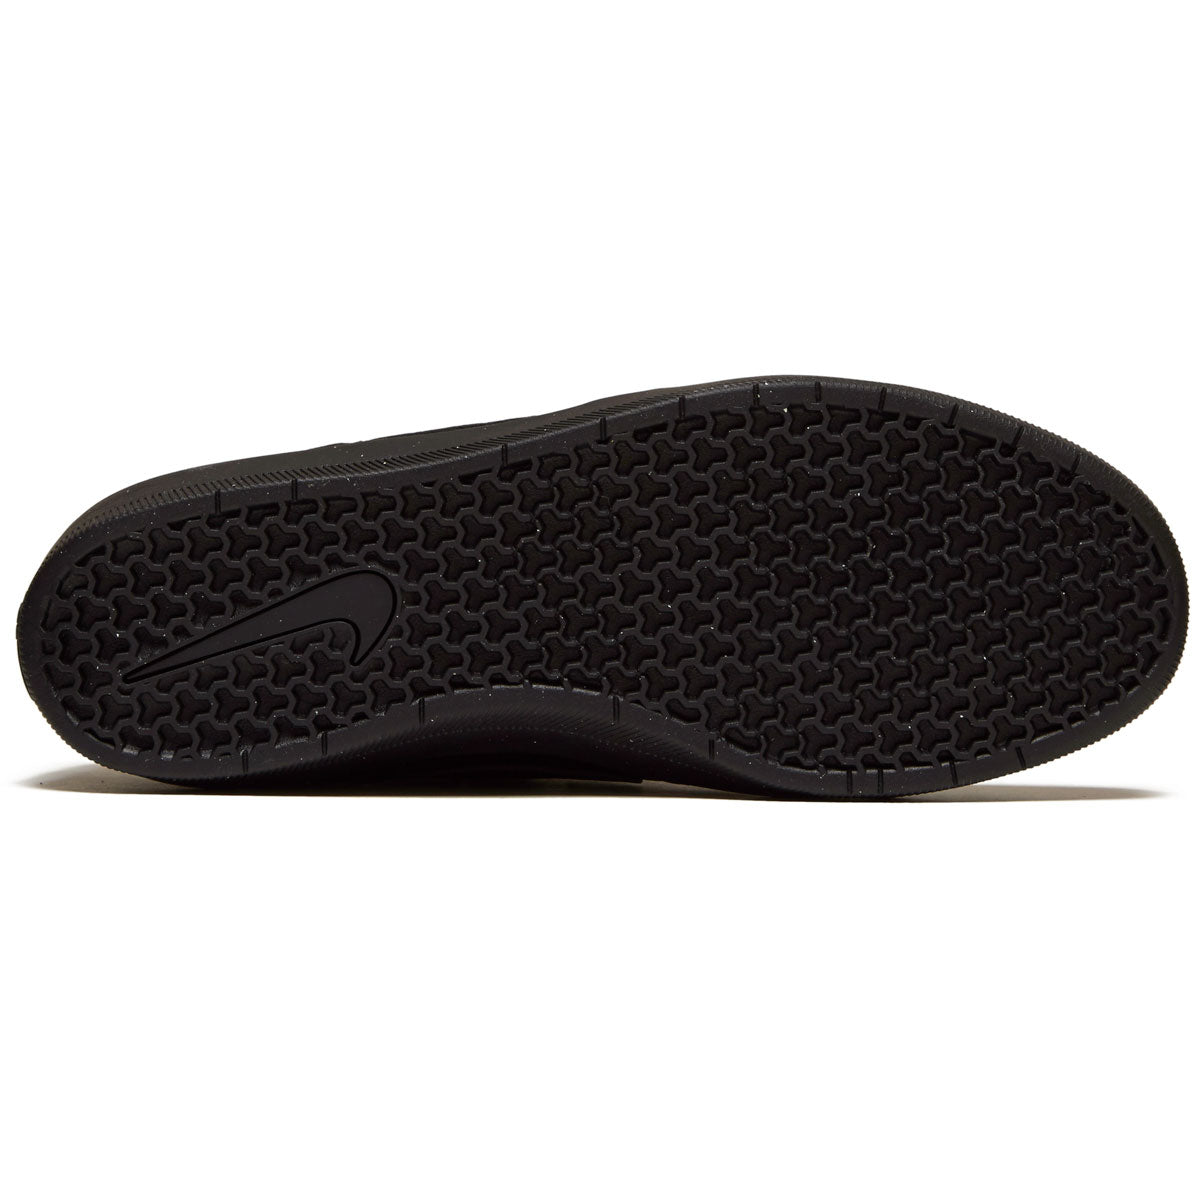 Nike SB Force 58 Premium Leather Shoes - Black/Black/Black/Black – CCS